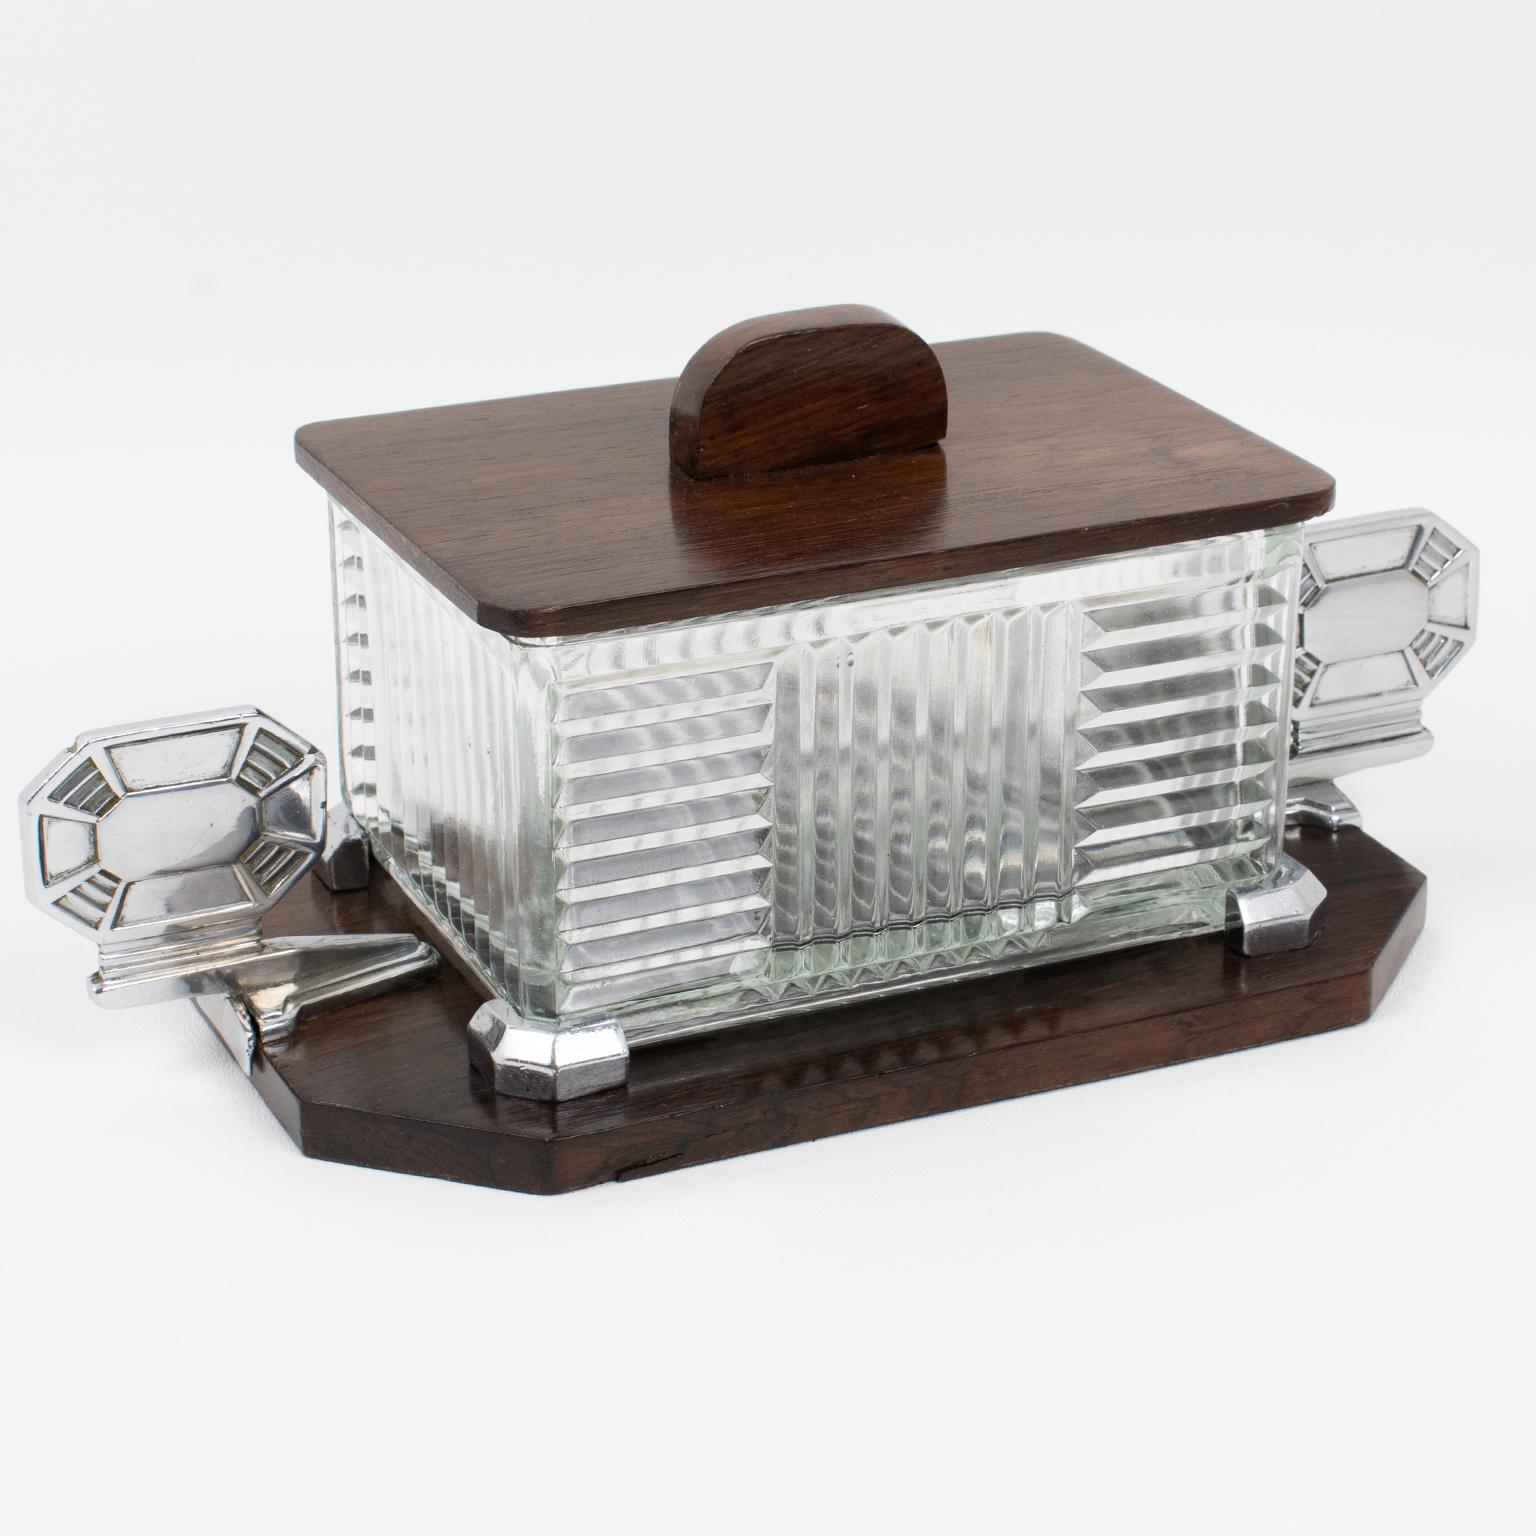 Louis Prodhon, Paris, a conçu et fabriqué cette boîte à biscuits ou bonbonnière décorative Art déco raffinée dans les années 1930. Le design moderniste s'enorgueillit d'une base de support en métal chromé et en bois avec de grandes poignées en